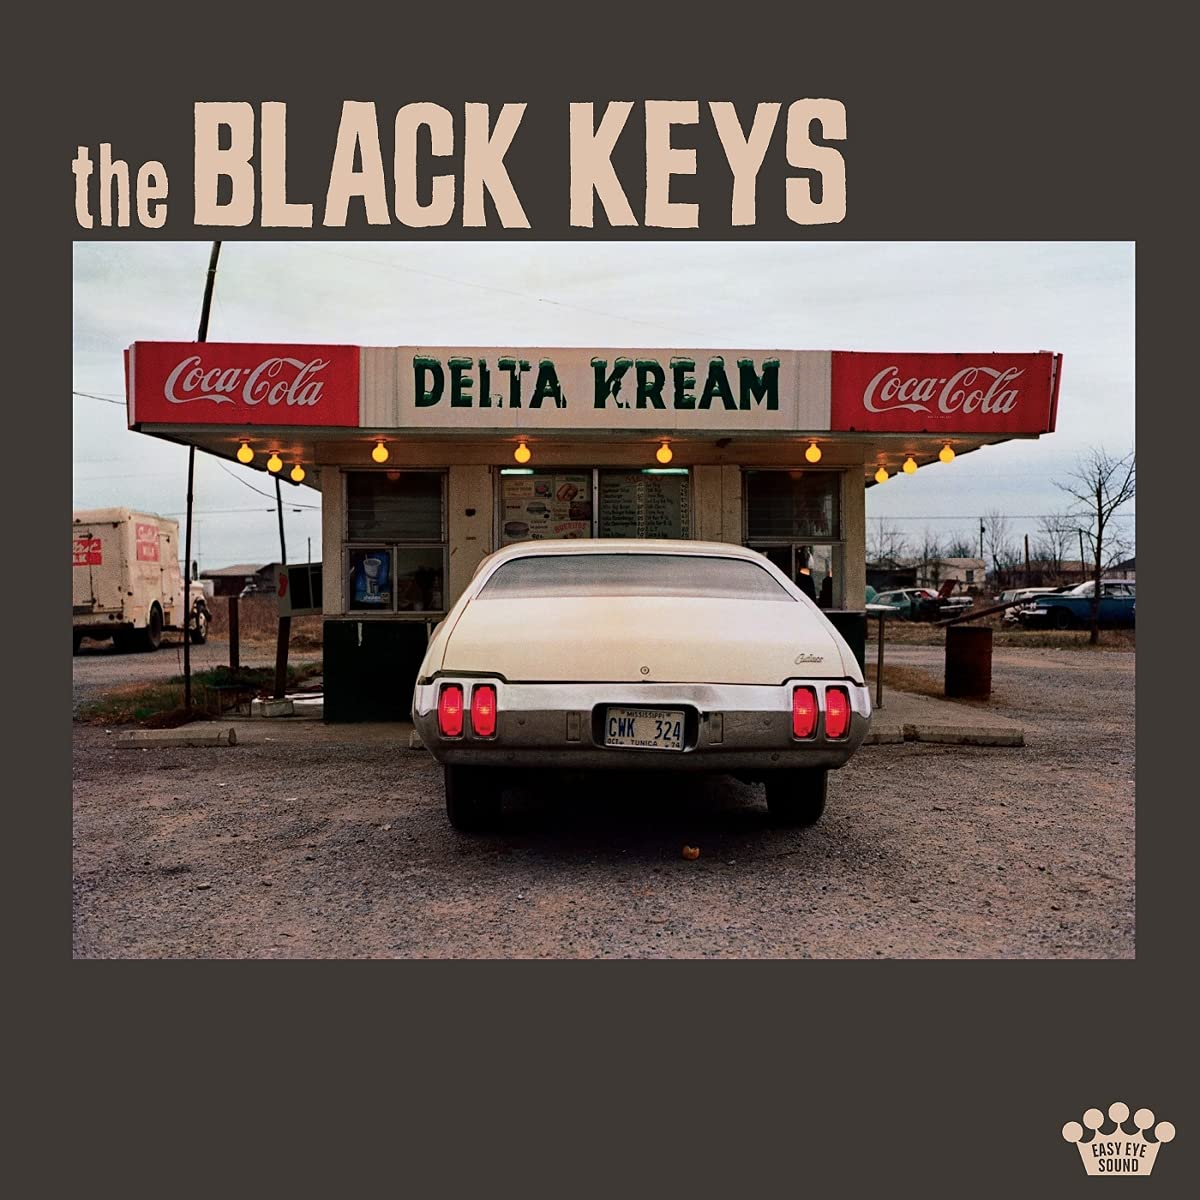 Free Music Black Keys Some Make Sweet Smooth Kream